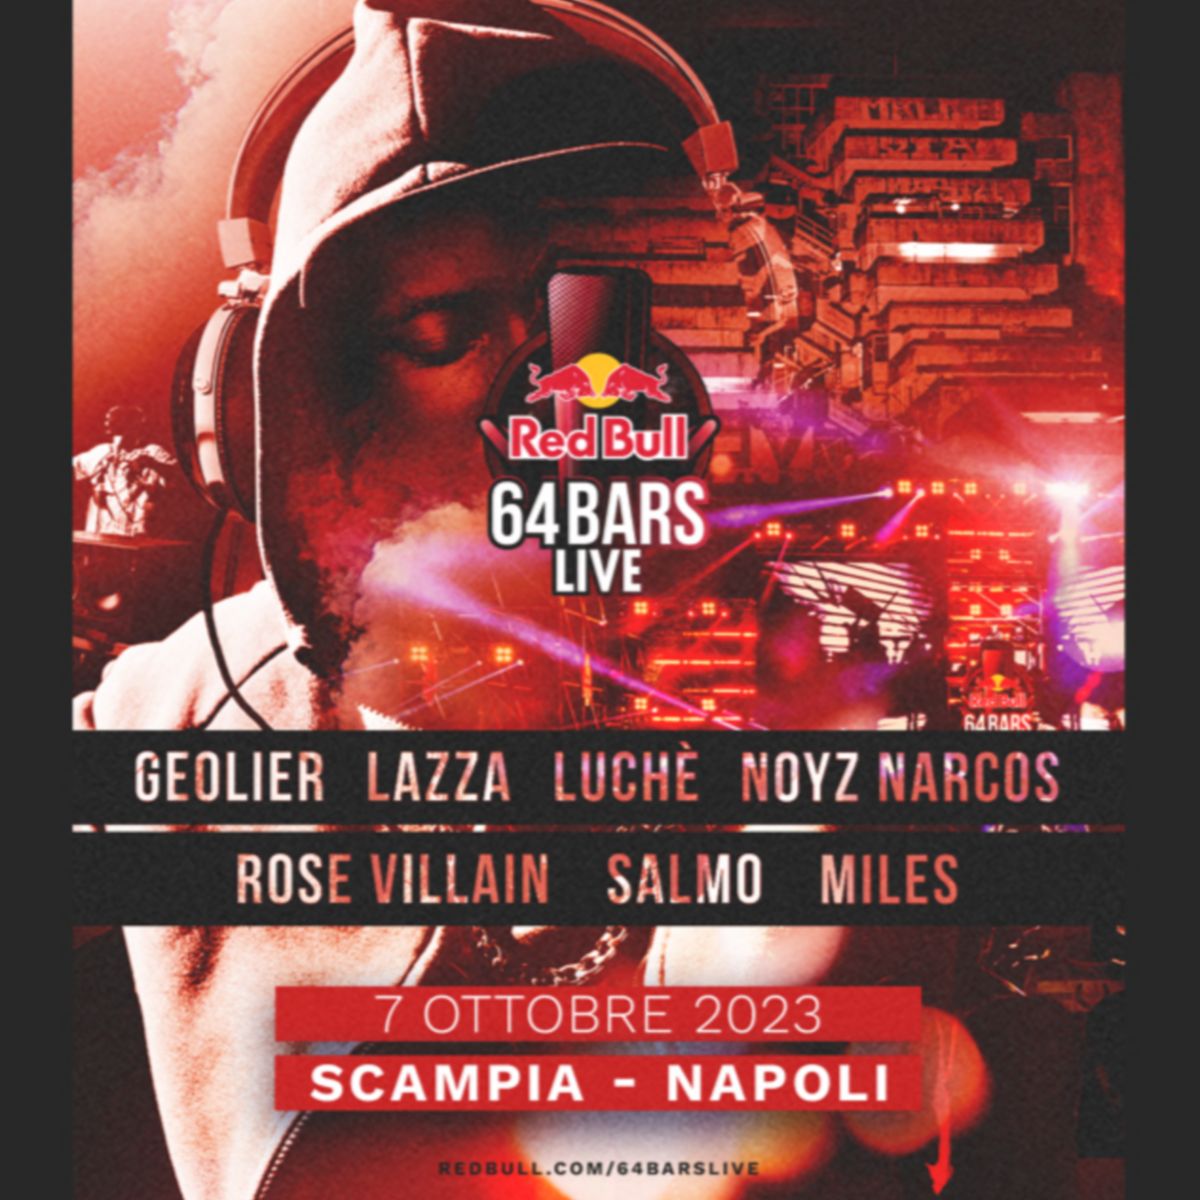 Locandina del Red Bull 64 Bars Live. Saranno presenti il 7 ottobre 2023 a Scampia: Geolier, Lazza, Luchè, Noyz Narcos, Rose Villain, Salmo e Miles.